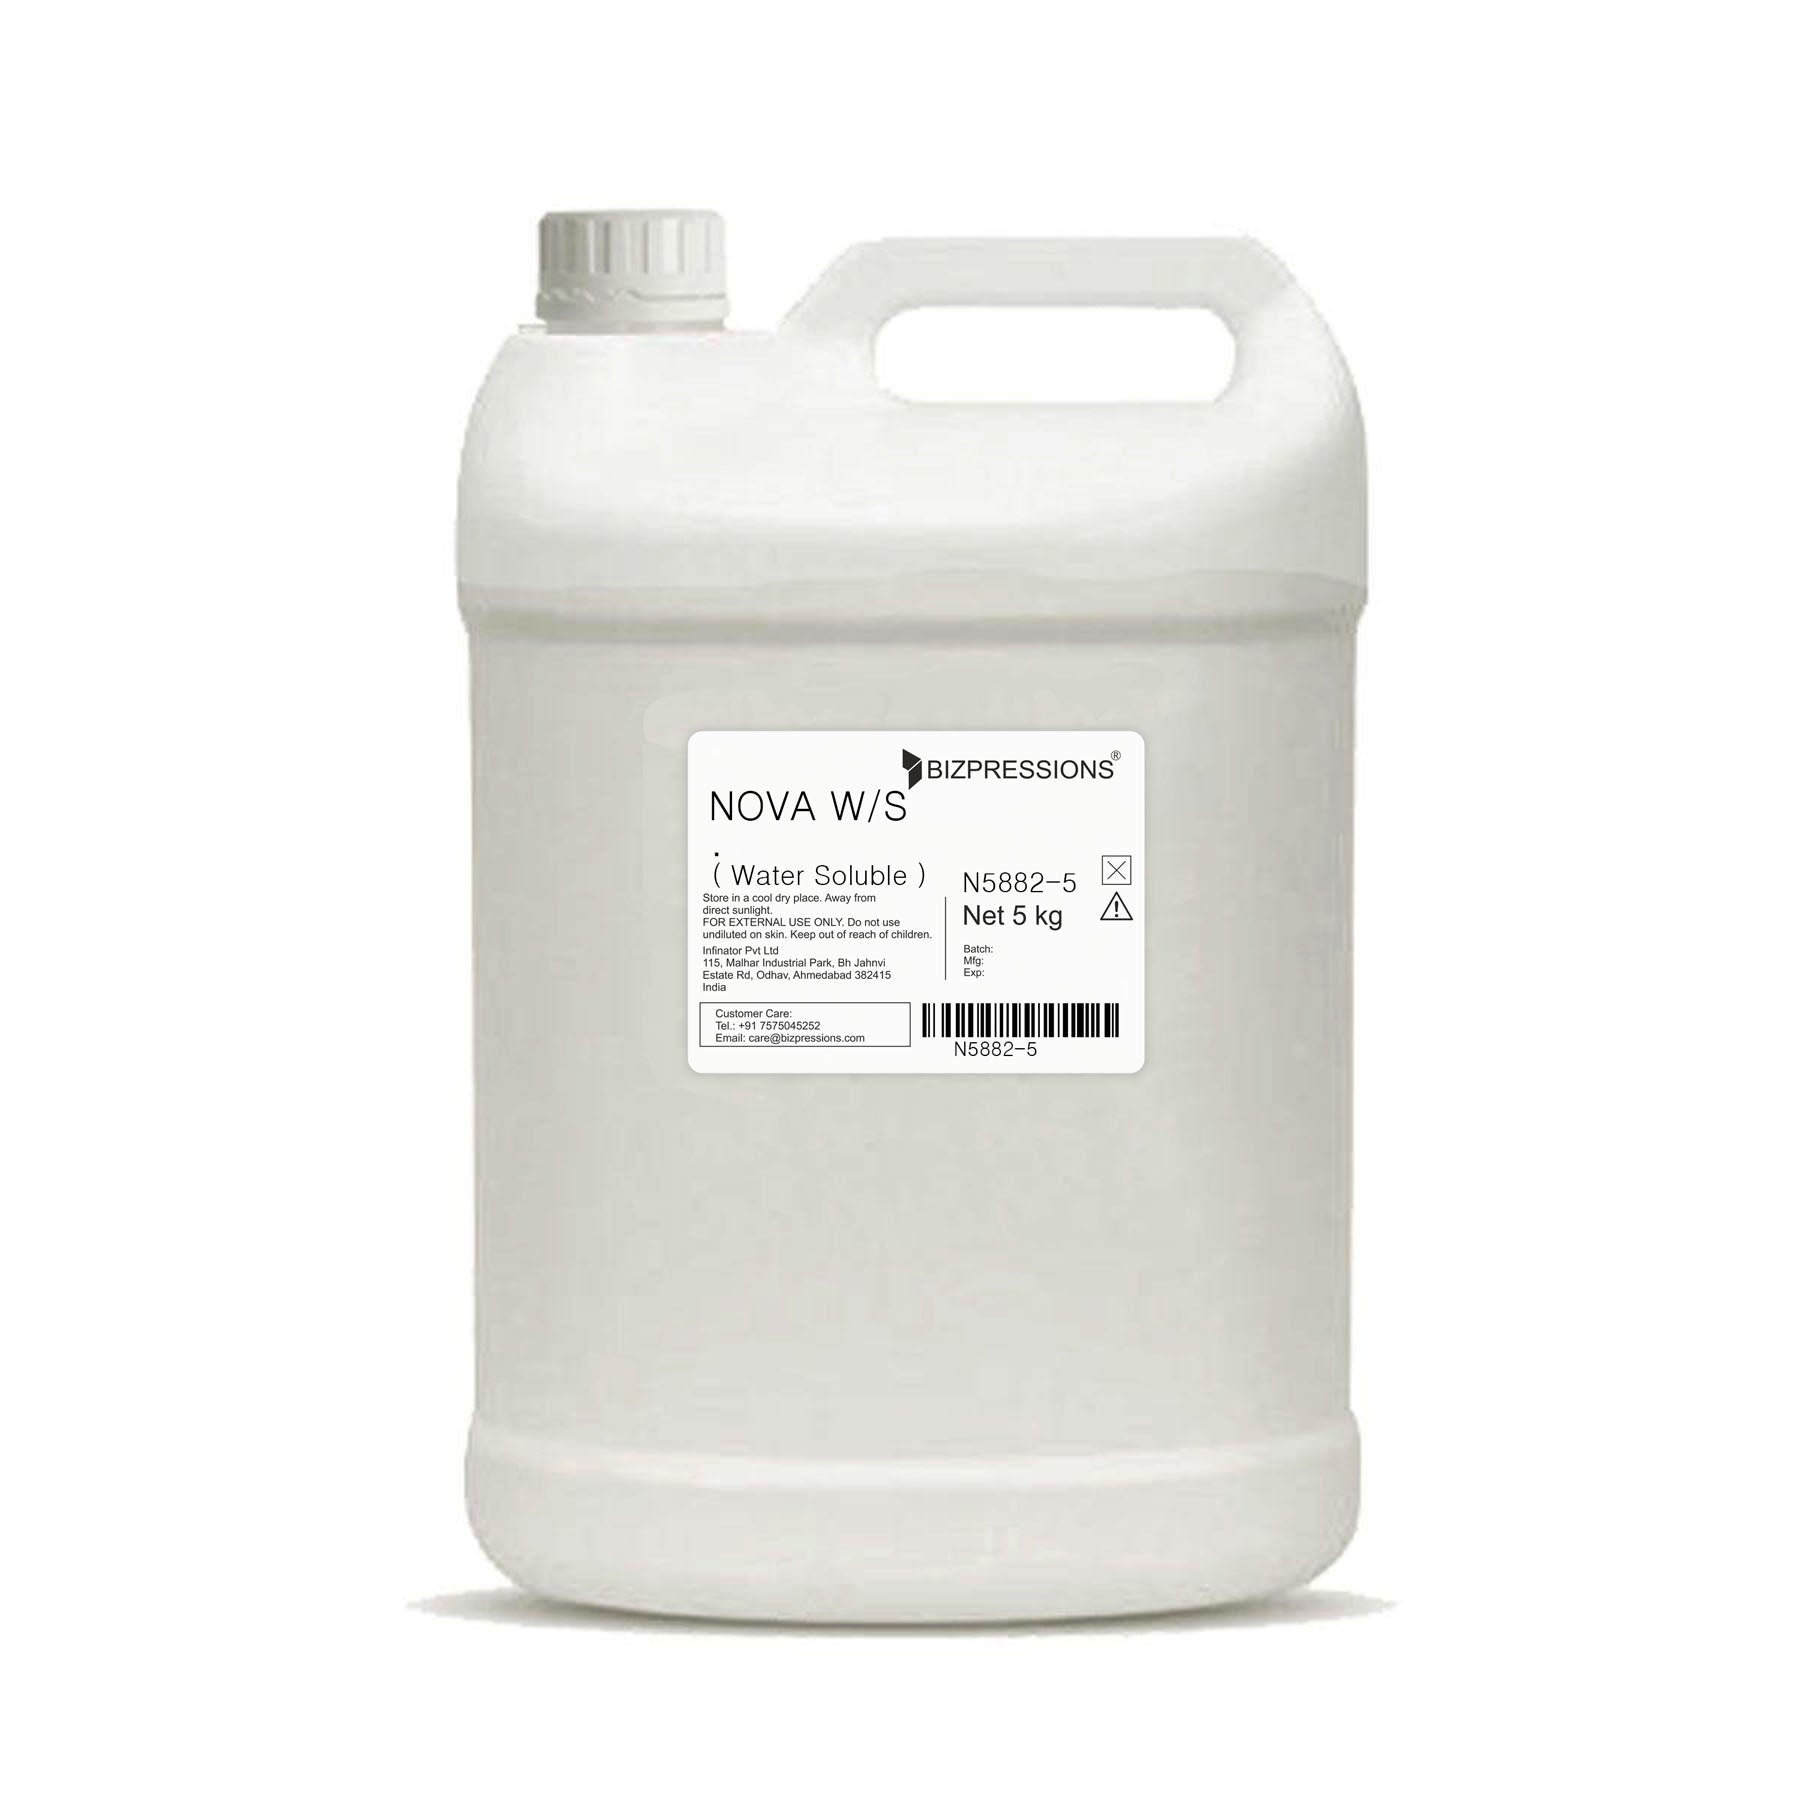 NOVA W/S - Fragrance ( Water Soluble ) - 5 kg